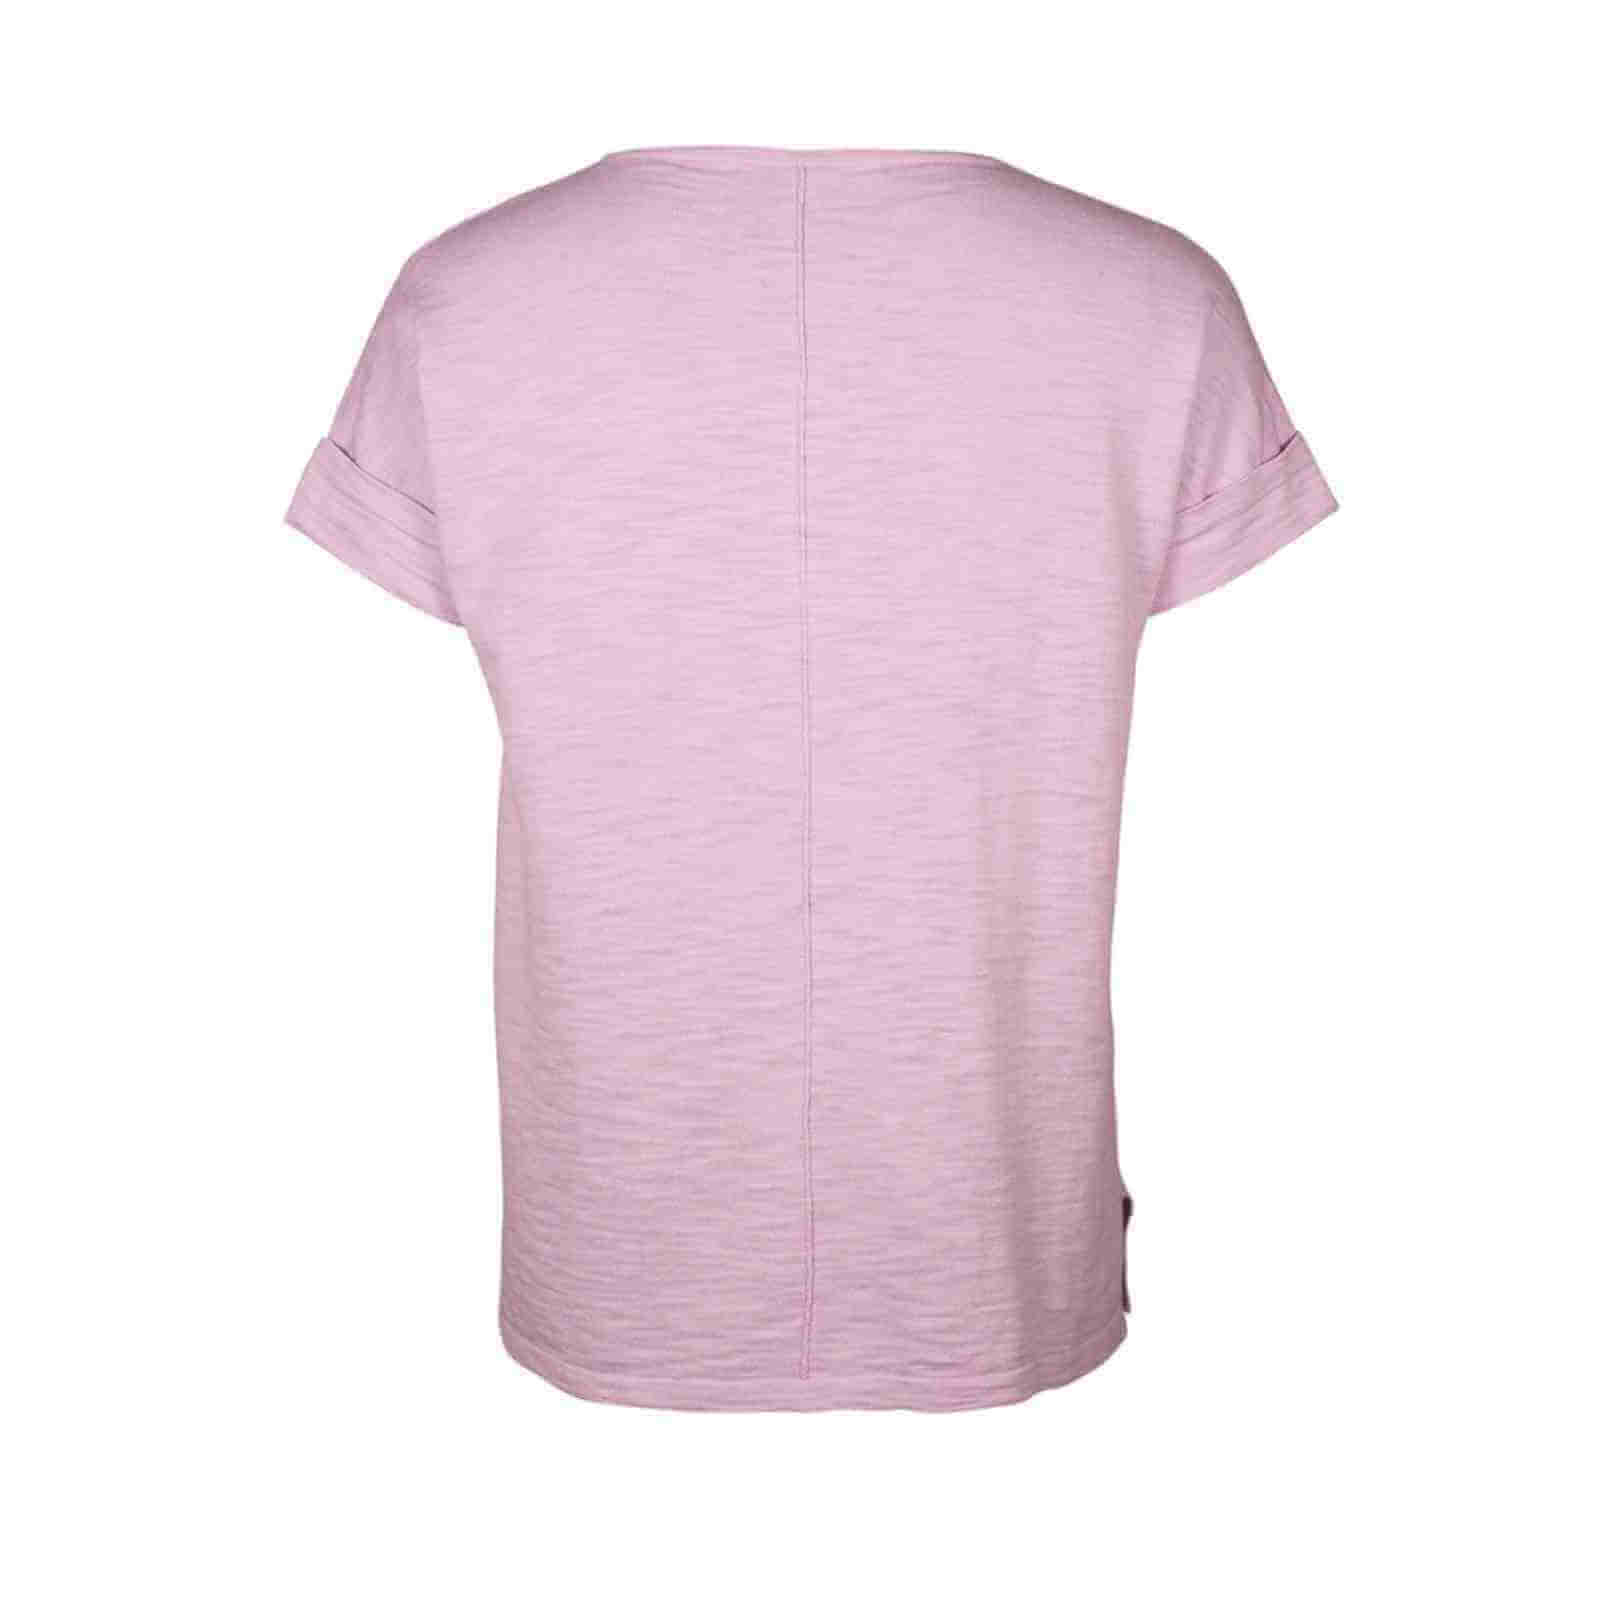 Kortærmet t-shirt i rosa bagfra fra Mansted